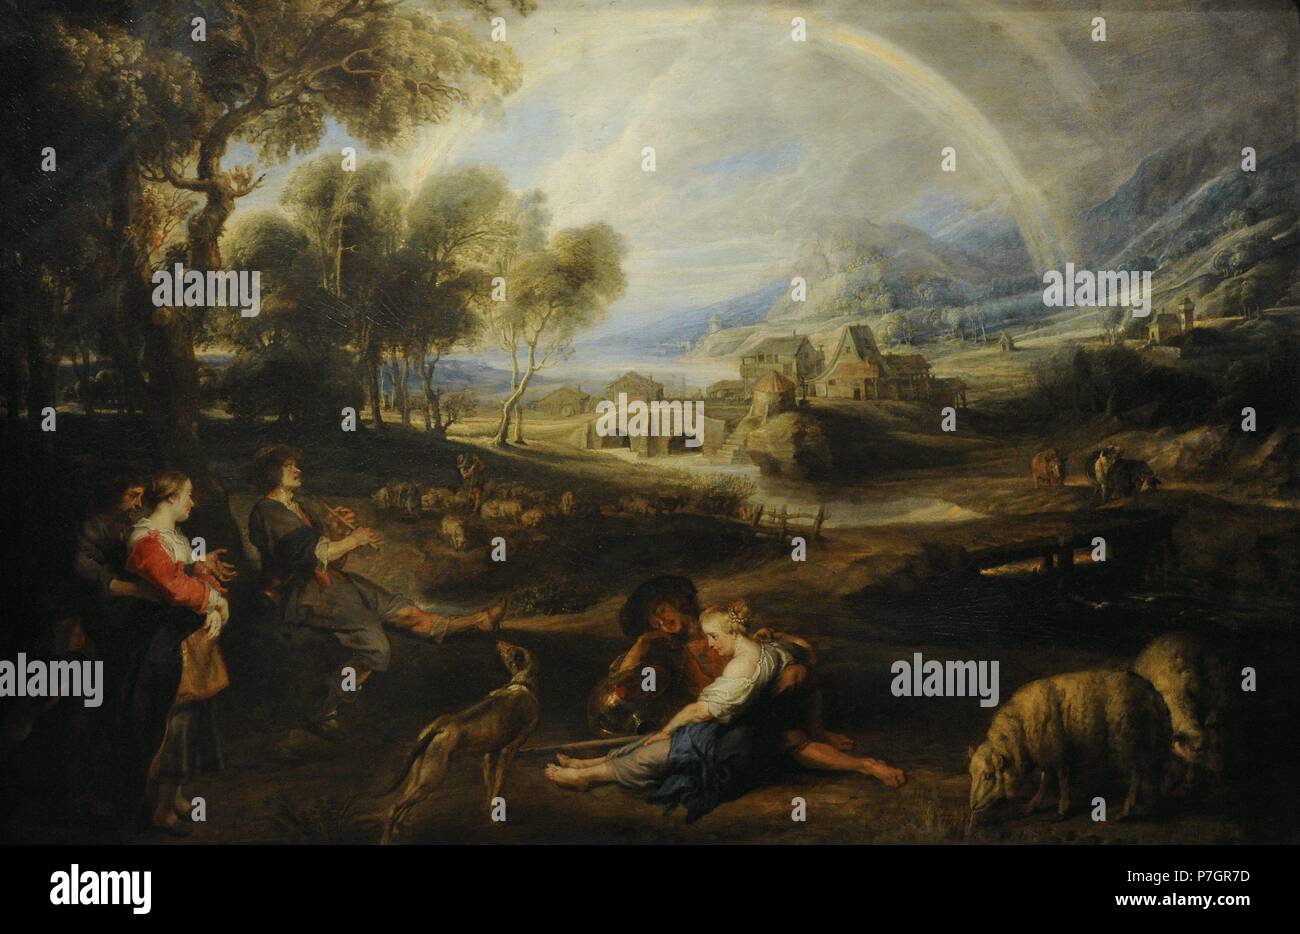 Peter Paul Rubens (1577-1640). Peintre baroque flamand. Paysage avec un arc-en-ciel, 1632-1635. Huile sur toile. Le Musée de l'Ermitage. Saint Petersburg. La Russie. Banque D'Images